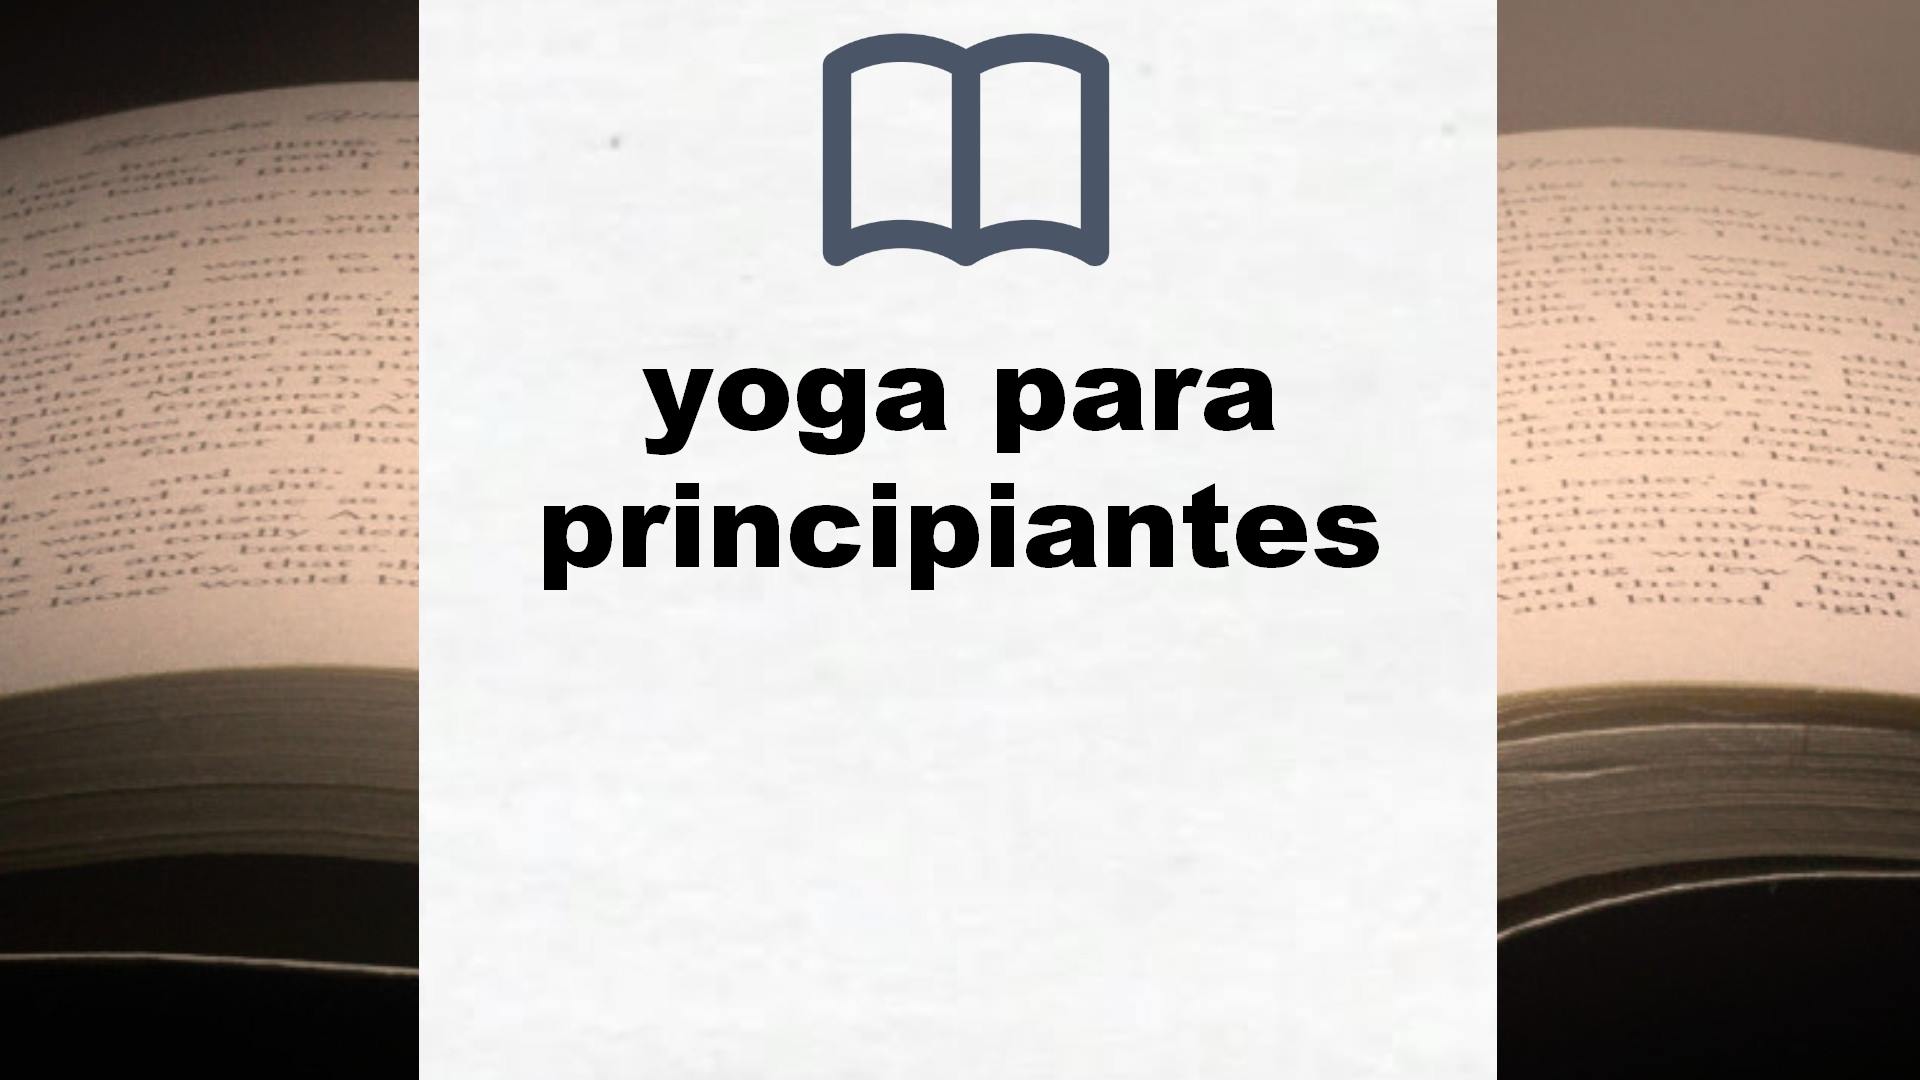 Libros sobre yoga para principiantes